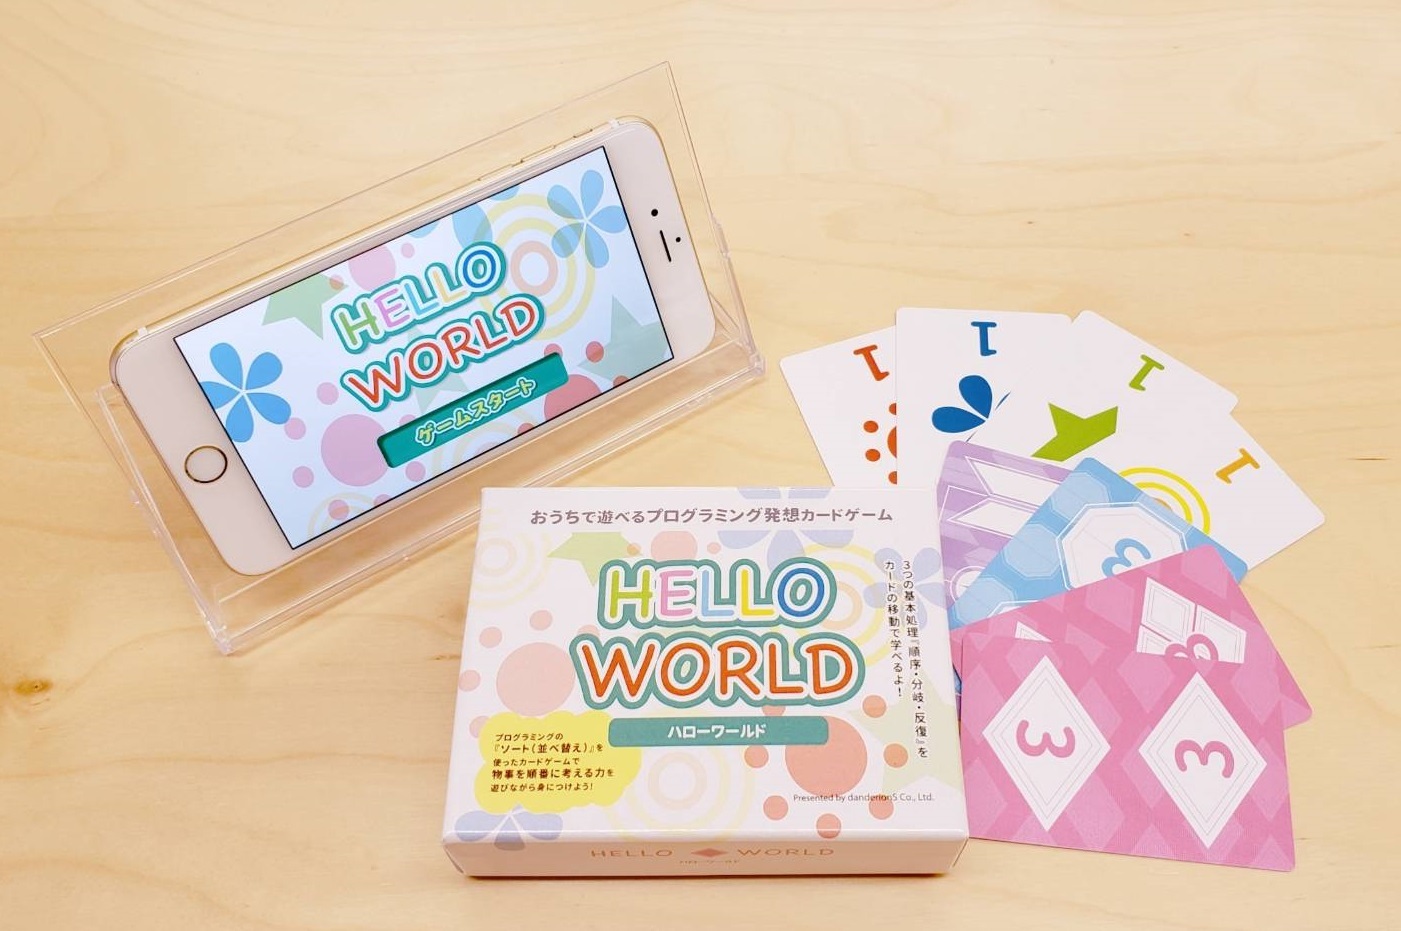 プログラミングで遊ぶカードゲーム Hello World 大阪 東京で開催の ゲームマーケット21 に出展 株式会社ダンデライオンズのプレスリリース